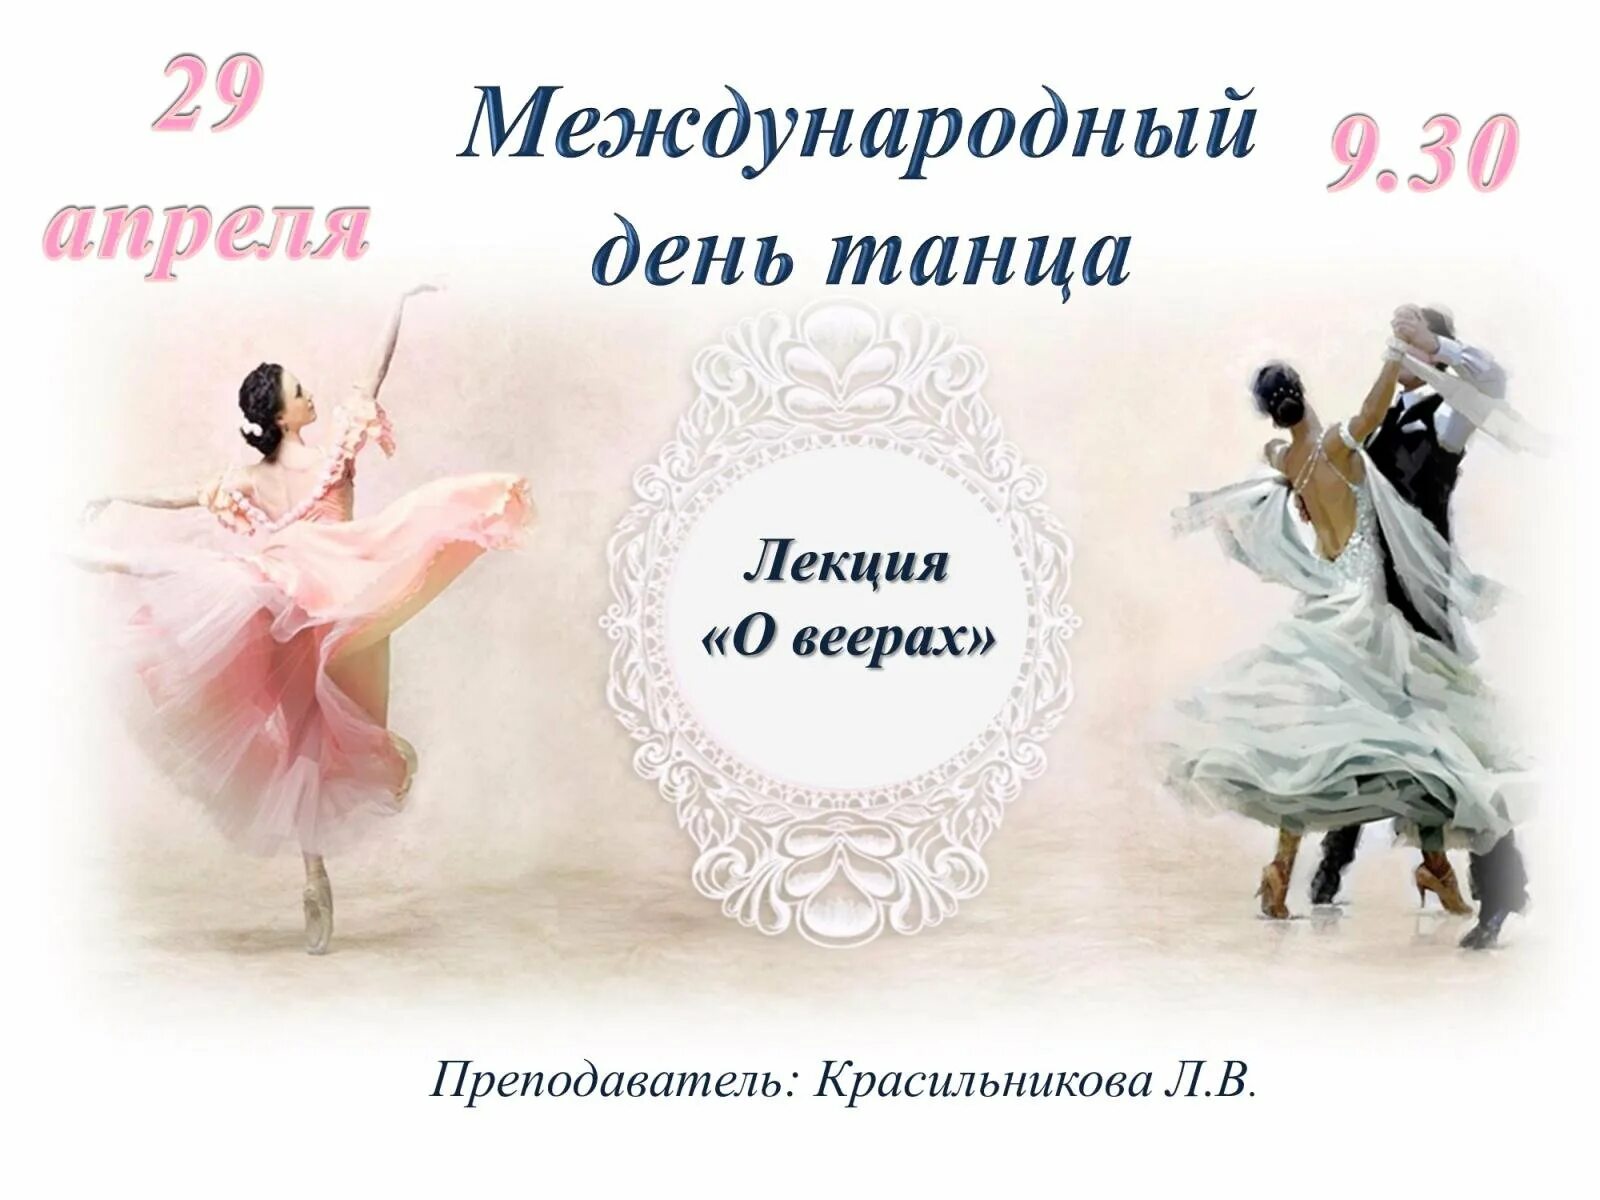 29 апреля международный день танца. Международный день танца. Международный день балета поздравления. 29 Апреля Международный день танца поздравления.